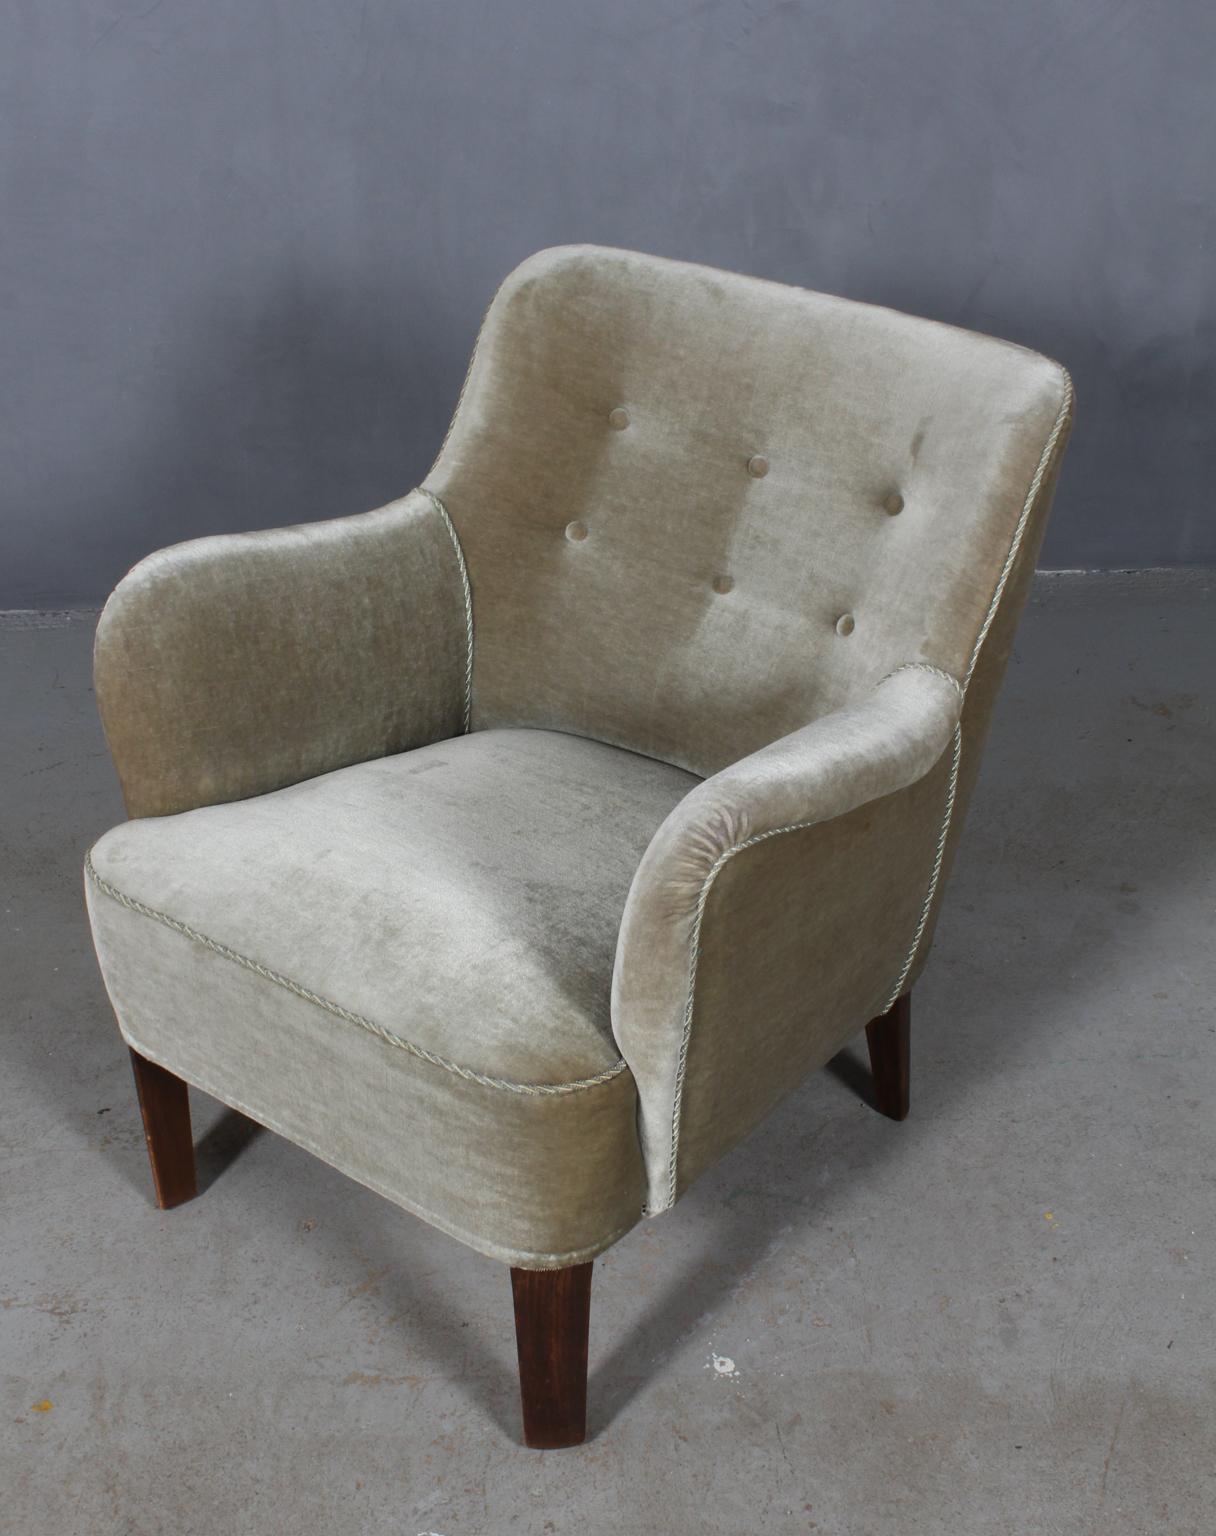 Peter Hvidt early lounge chair. 

Upholstered with velvet.

Made by Fritz Hansen or Ludvig Pontopidan, Denmark, 1940s.